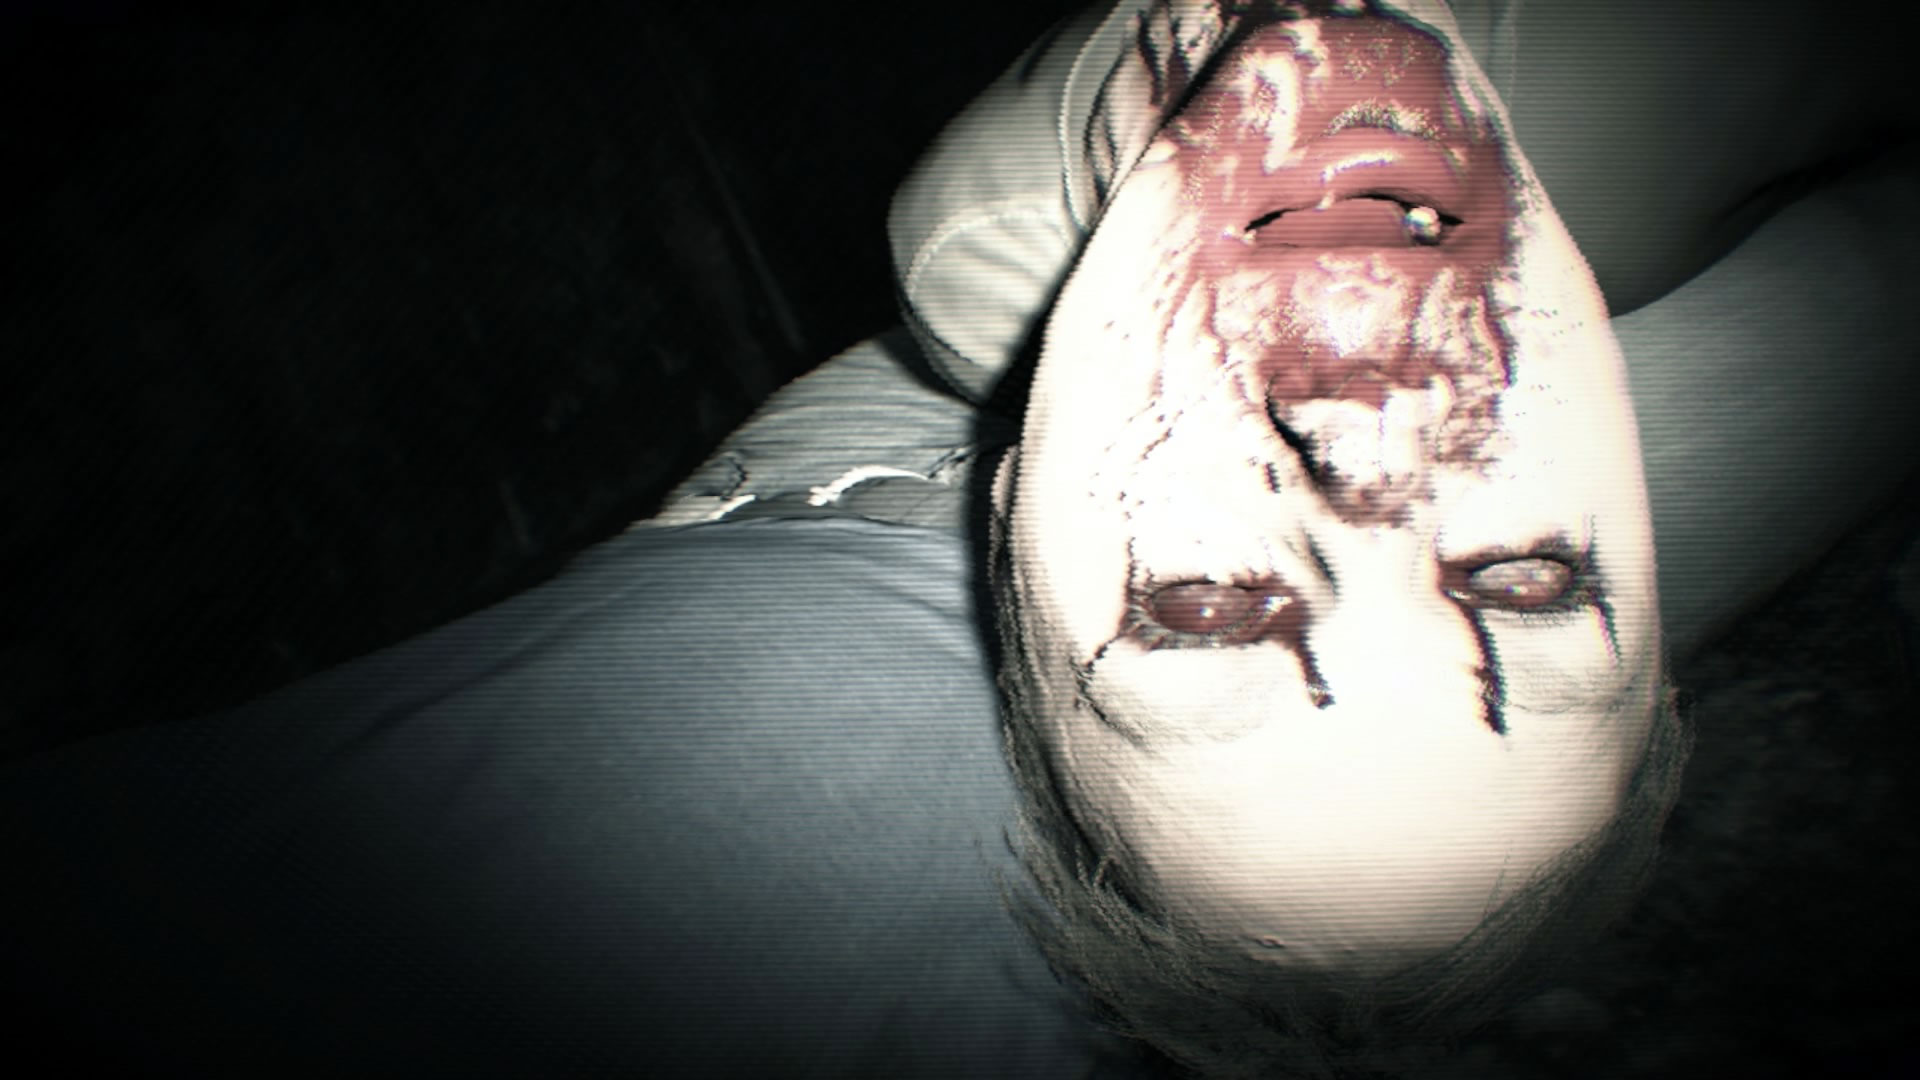 Darmowy motyw na PS4 z Resident Evil 7 do pobrania